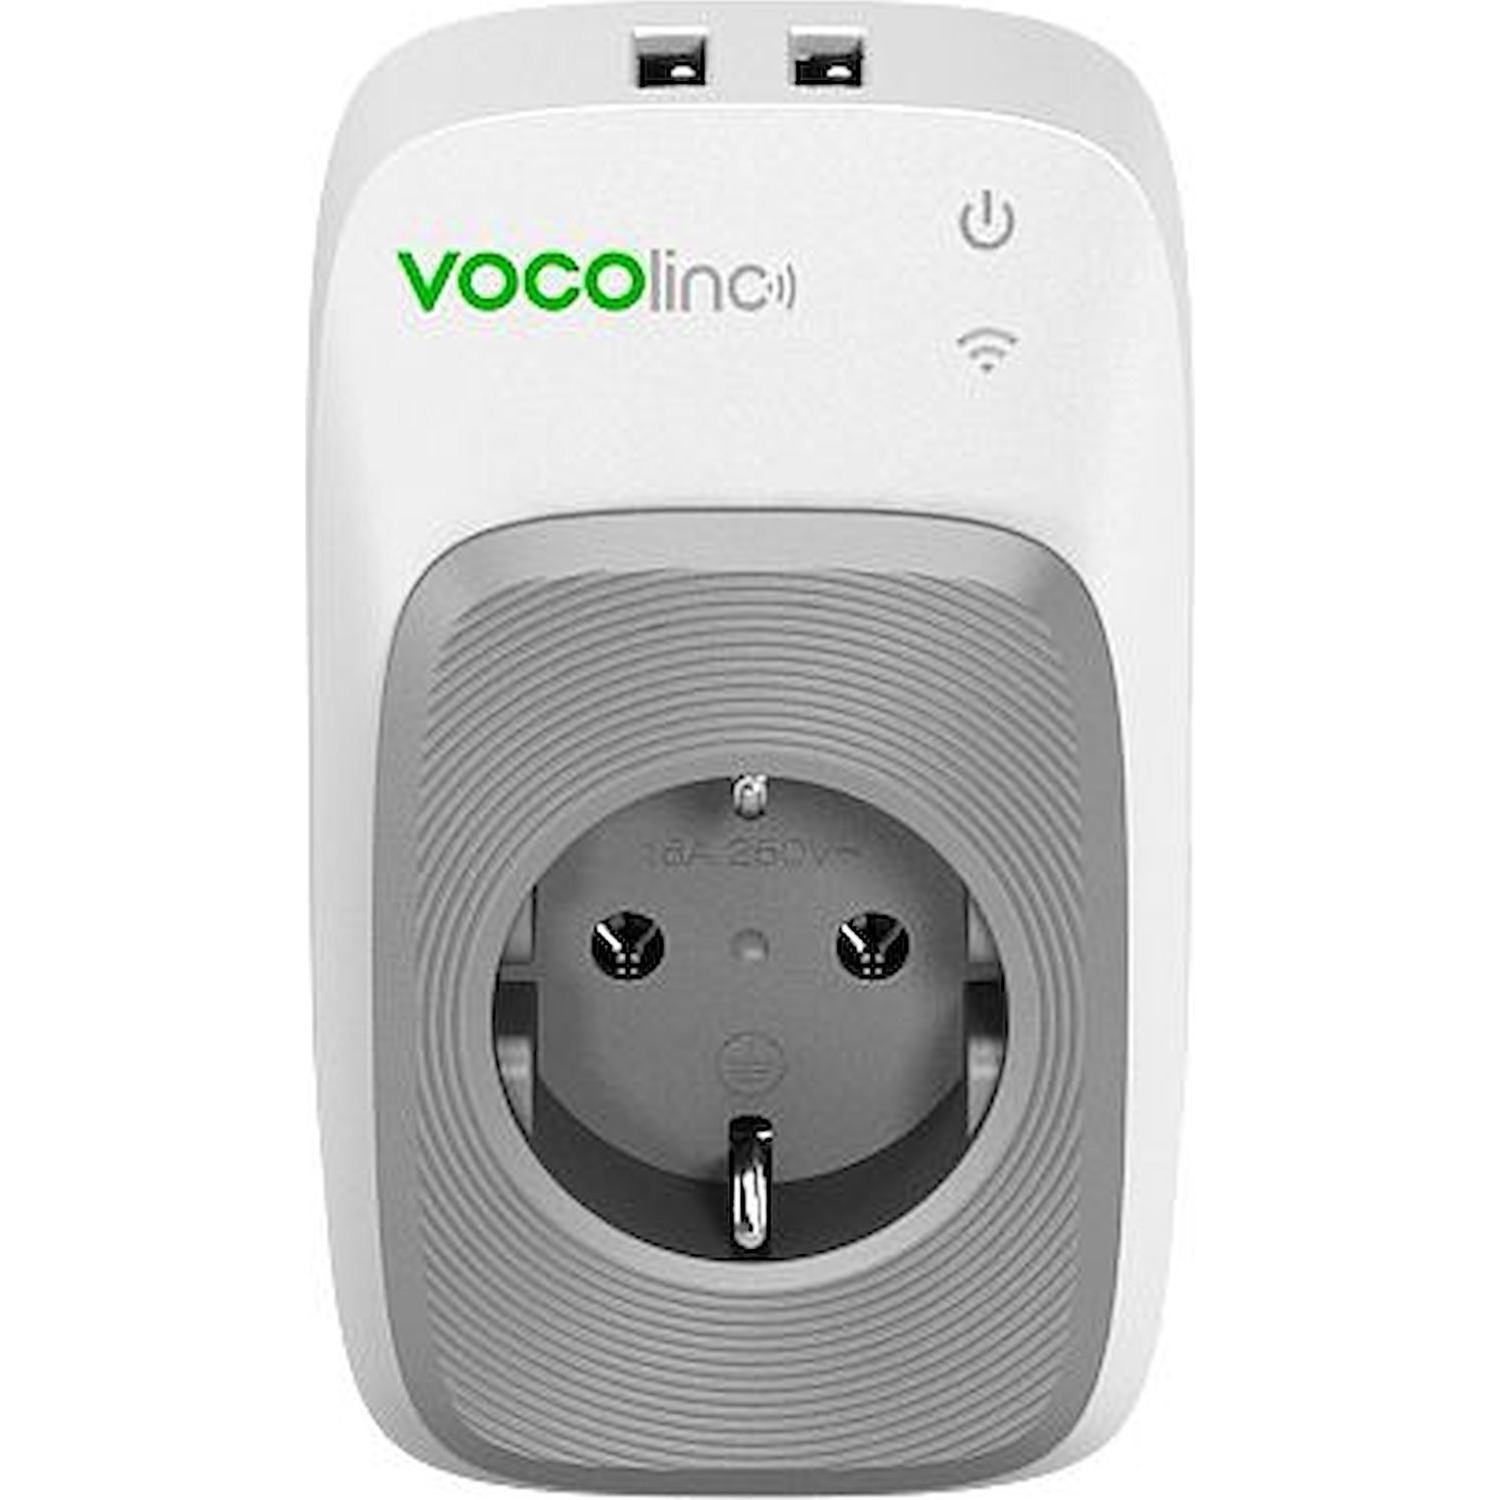 Immagine per Presa smart Vocolinc PM5 con 2 porte USB compatibile con Apple homekit,Alexa e Google assistant da DIMOStore